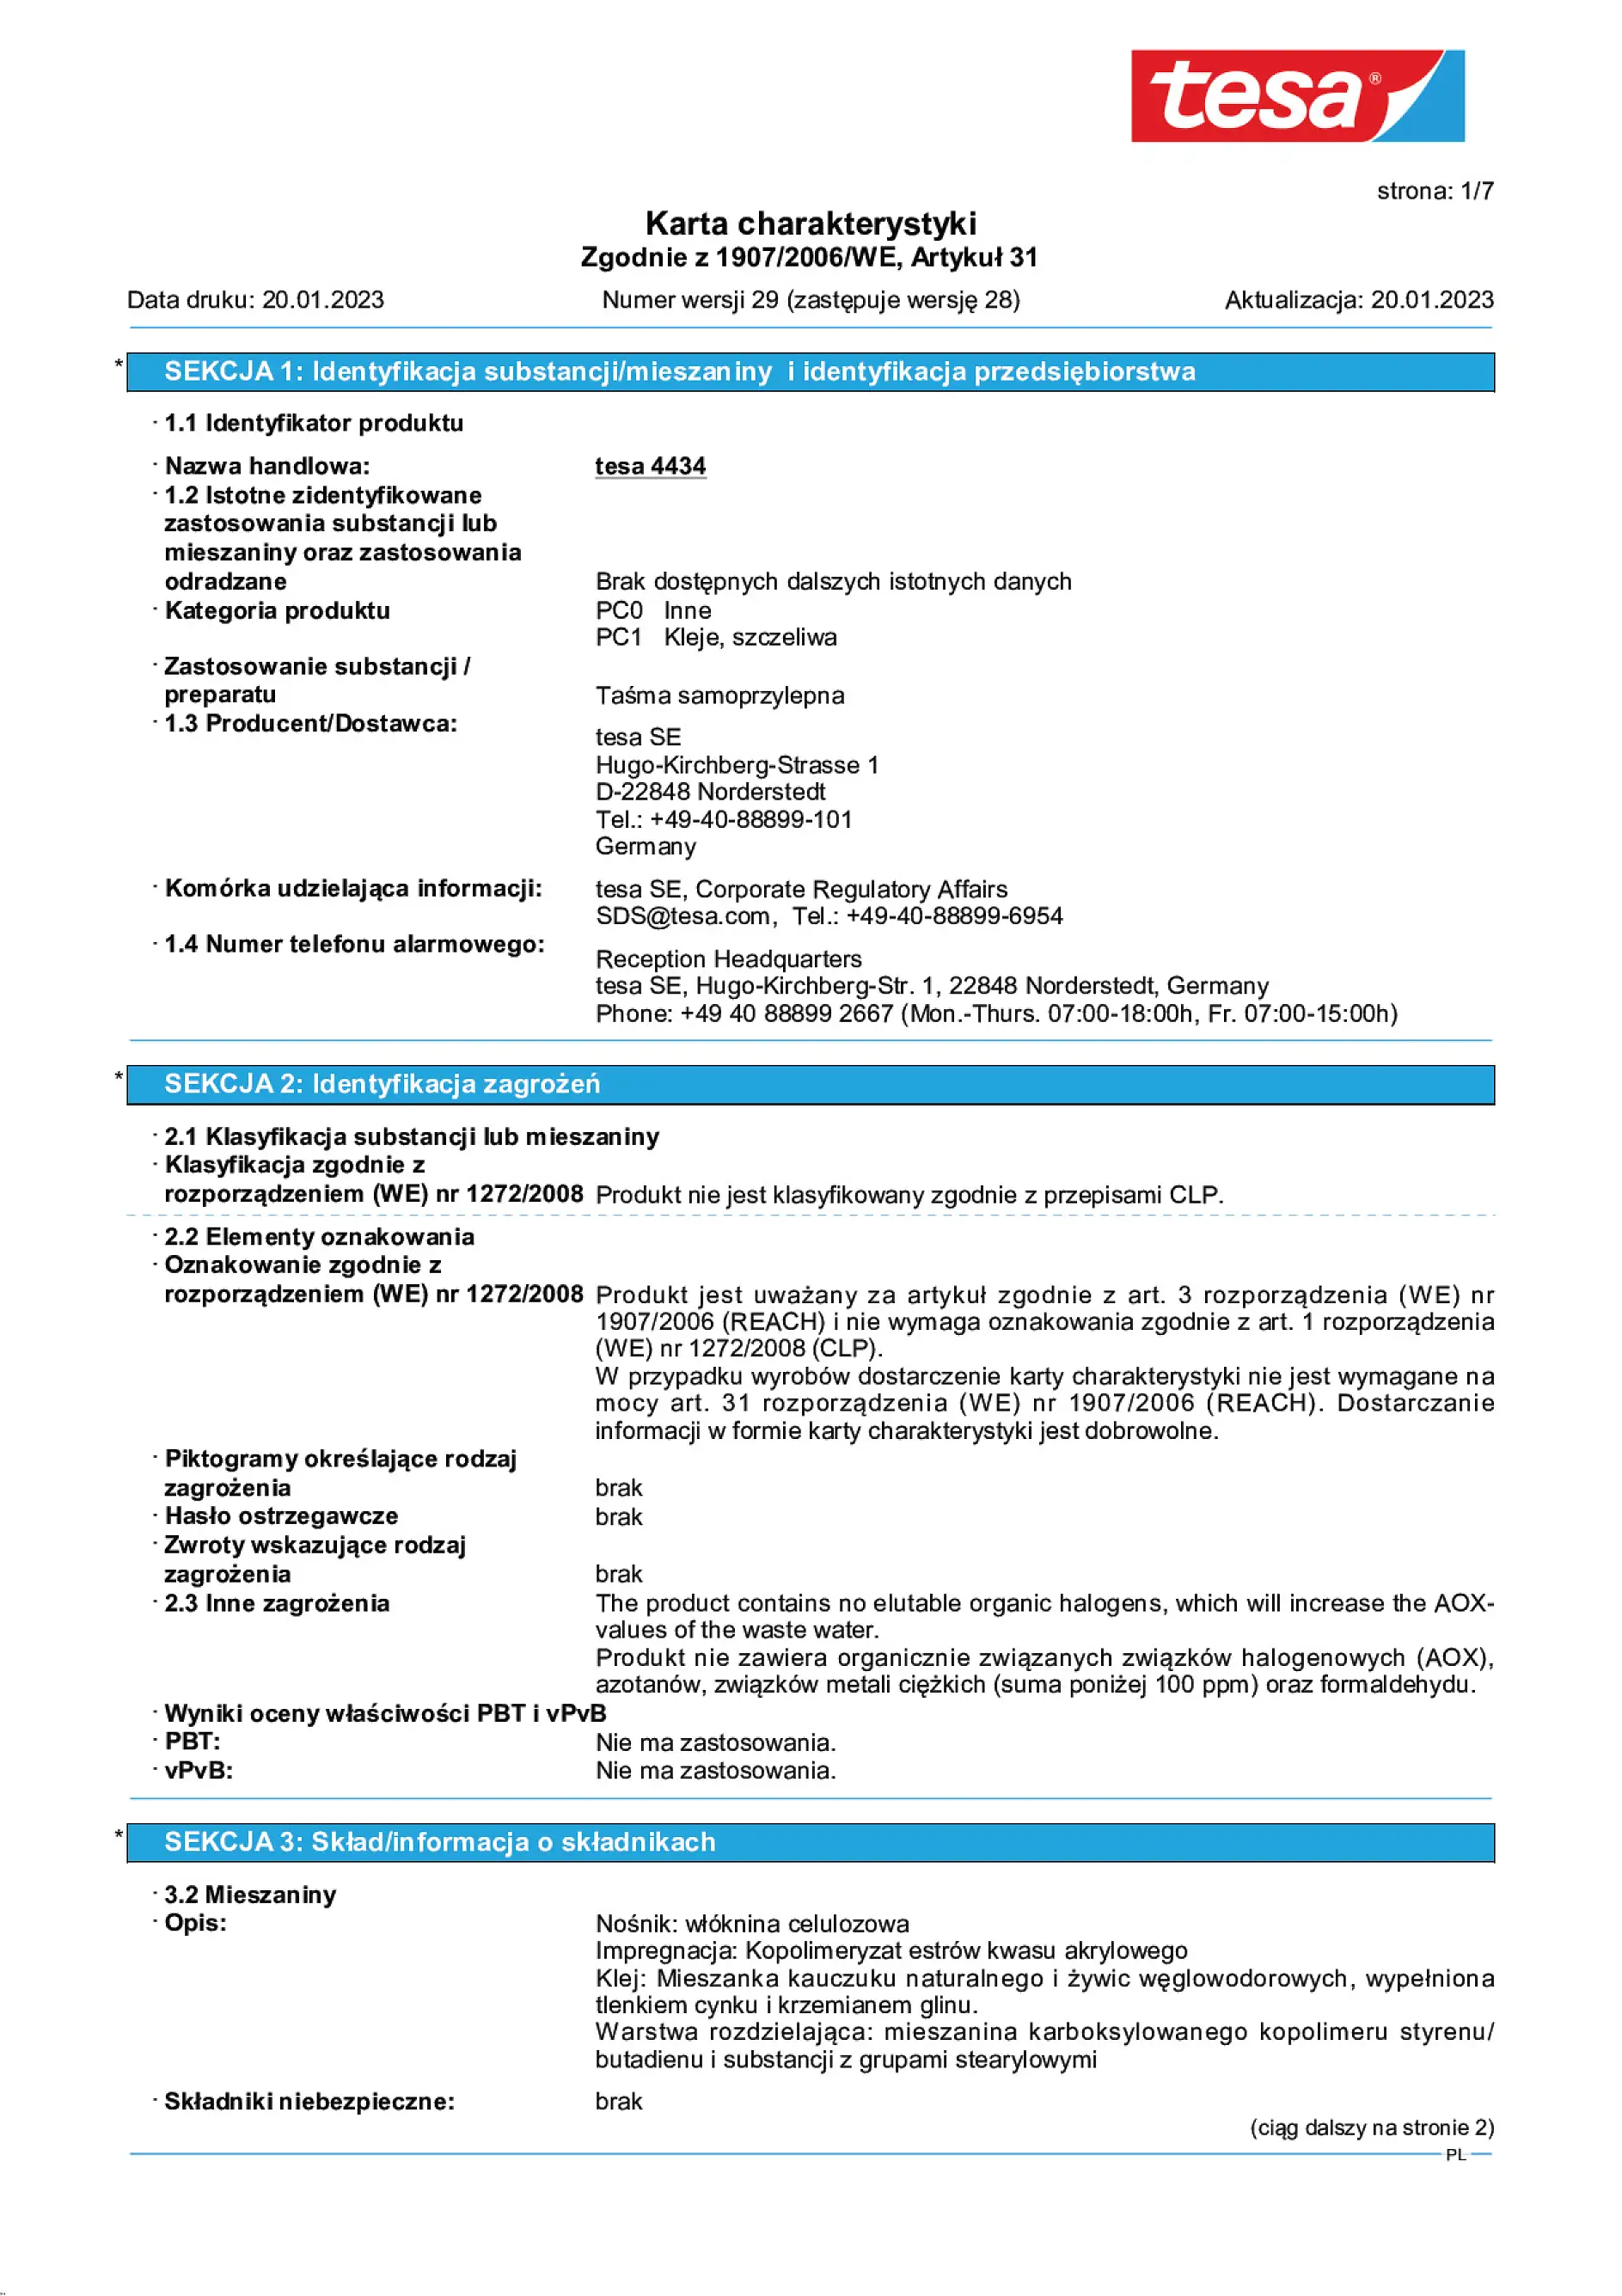 Safety data sheet_tesa® 04434_pl-PL_v29